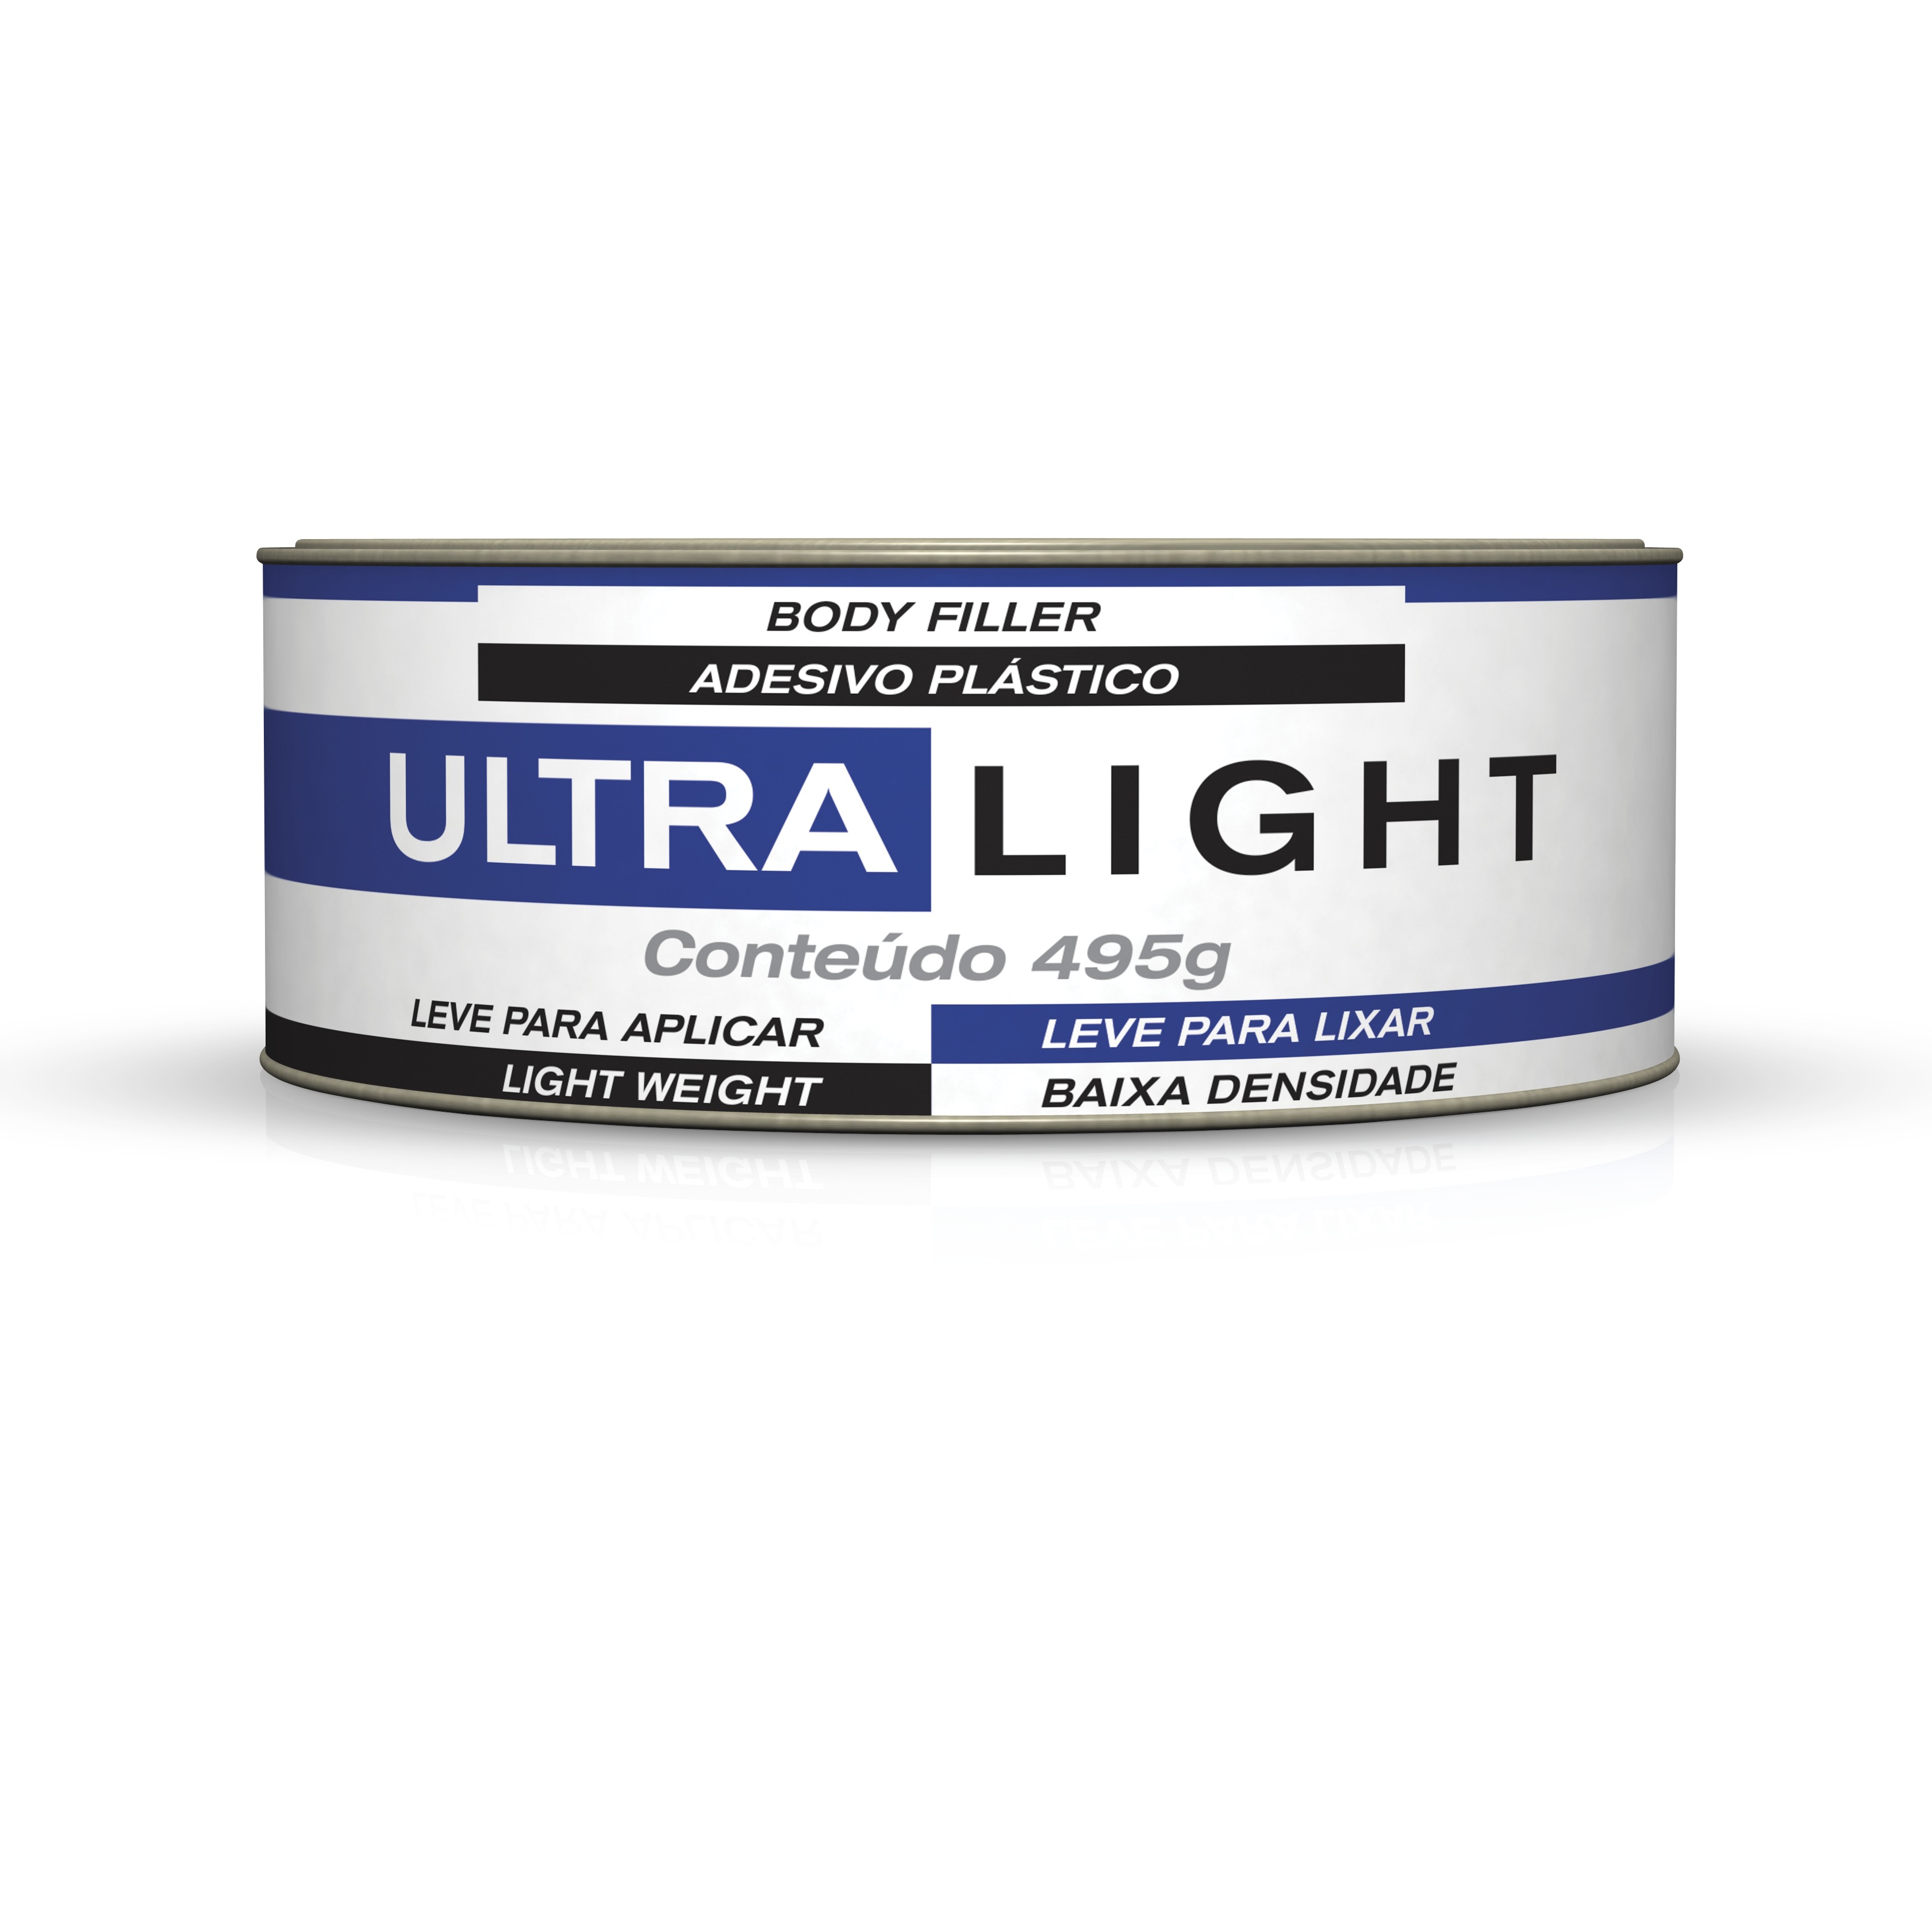 MAXIRUBBER ULTRA LIGHT ADS PLASTICO 495G